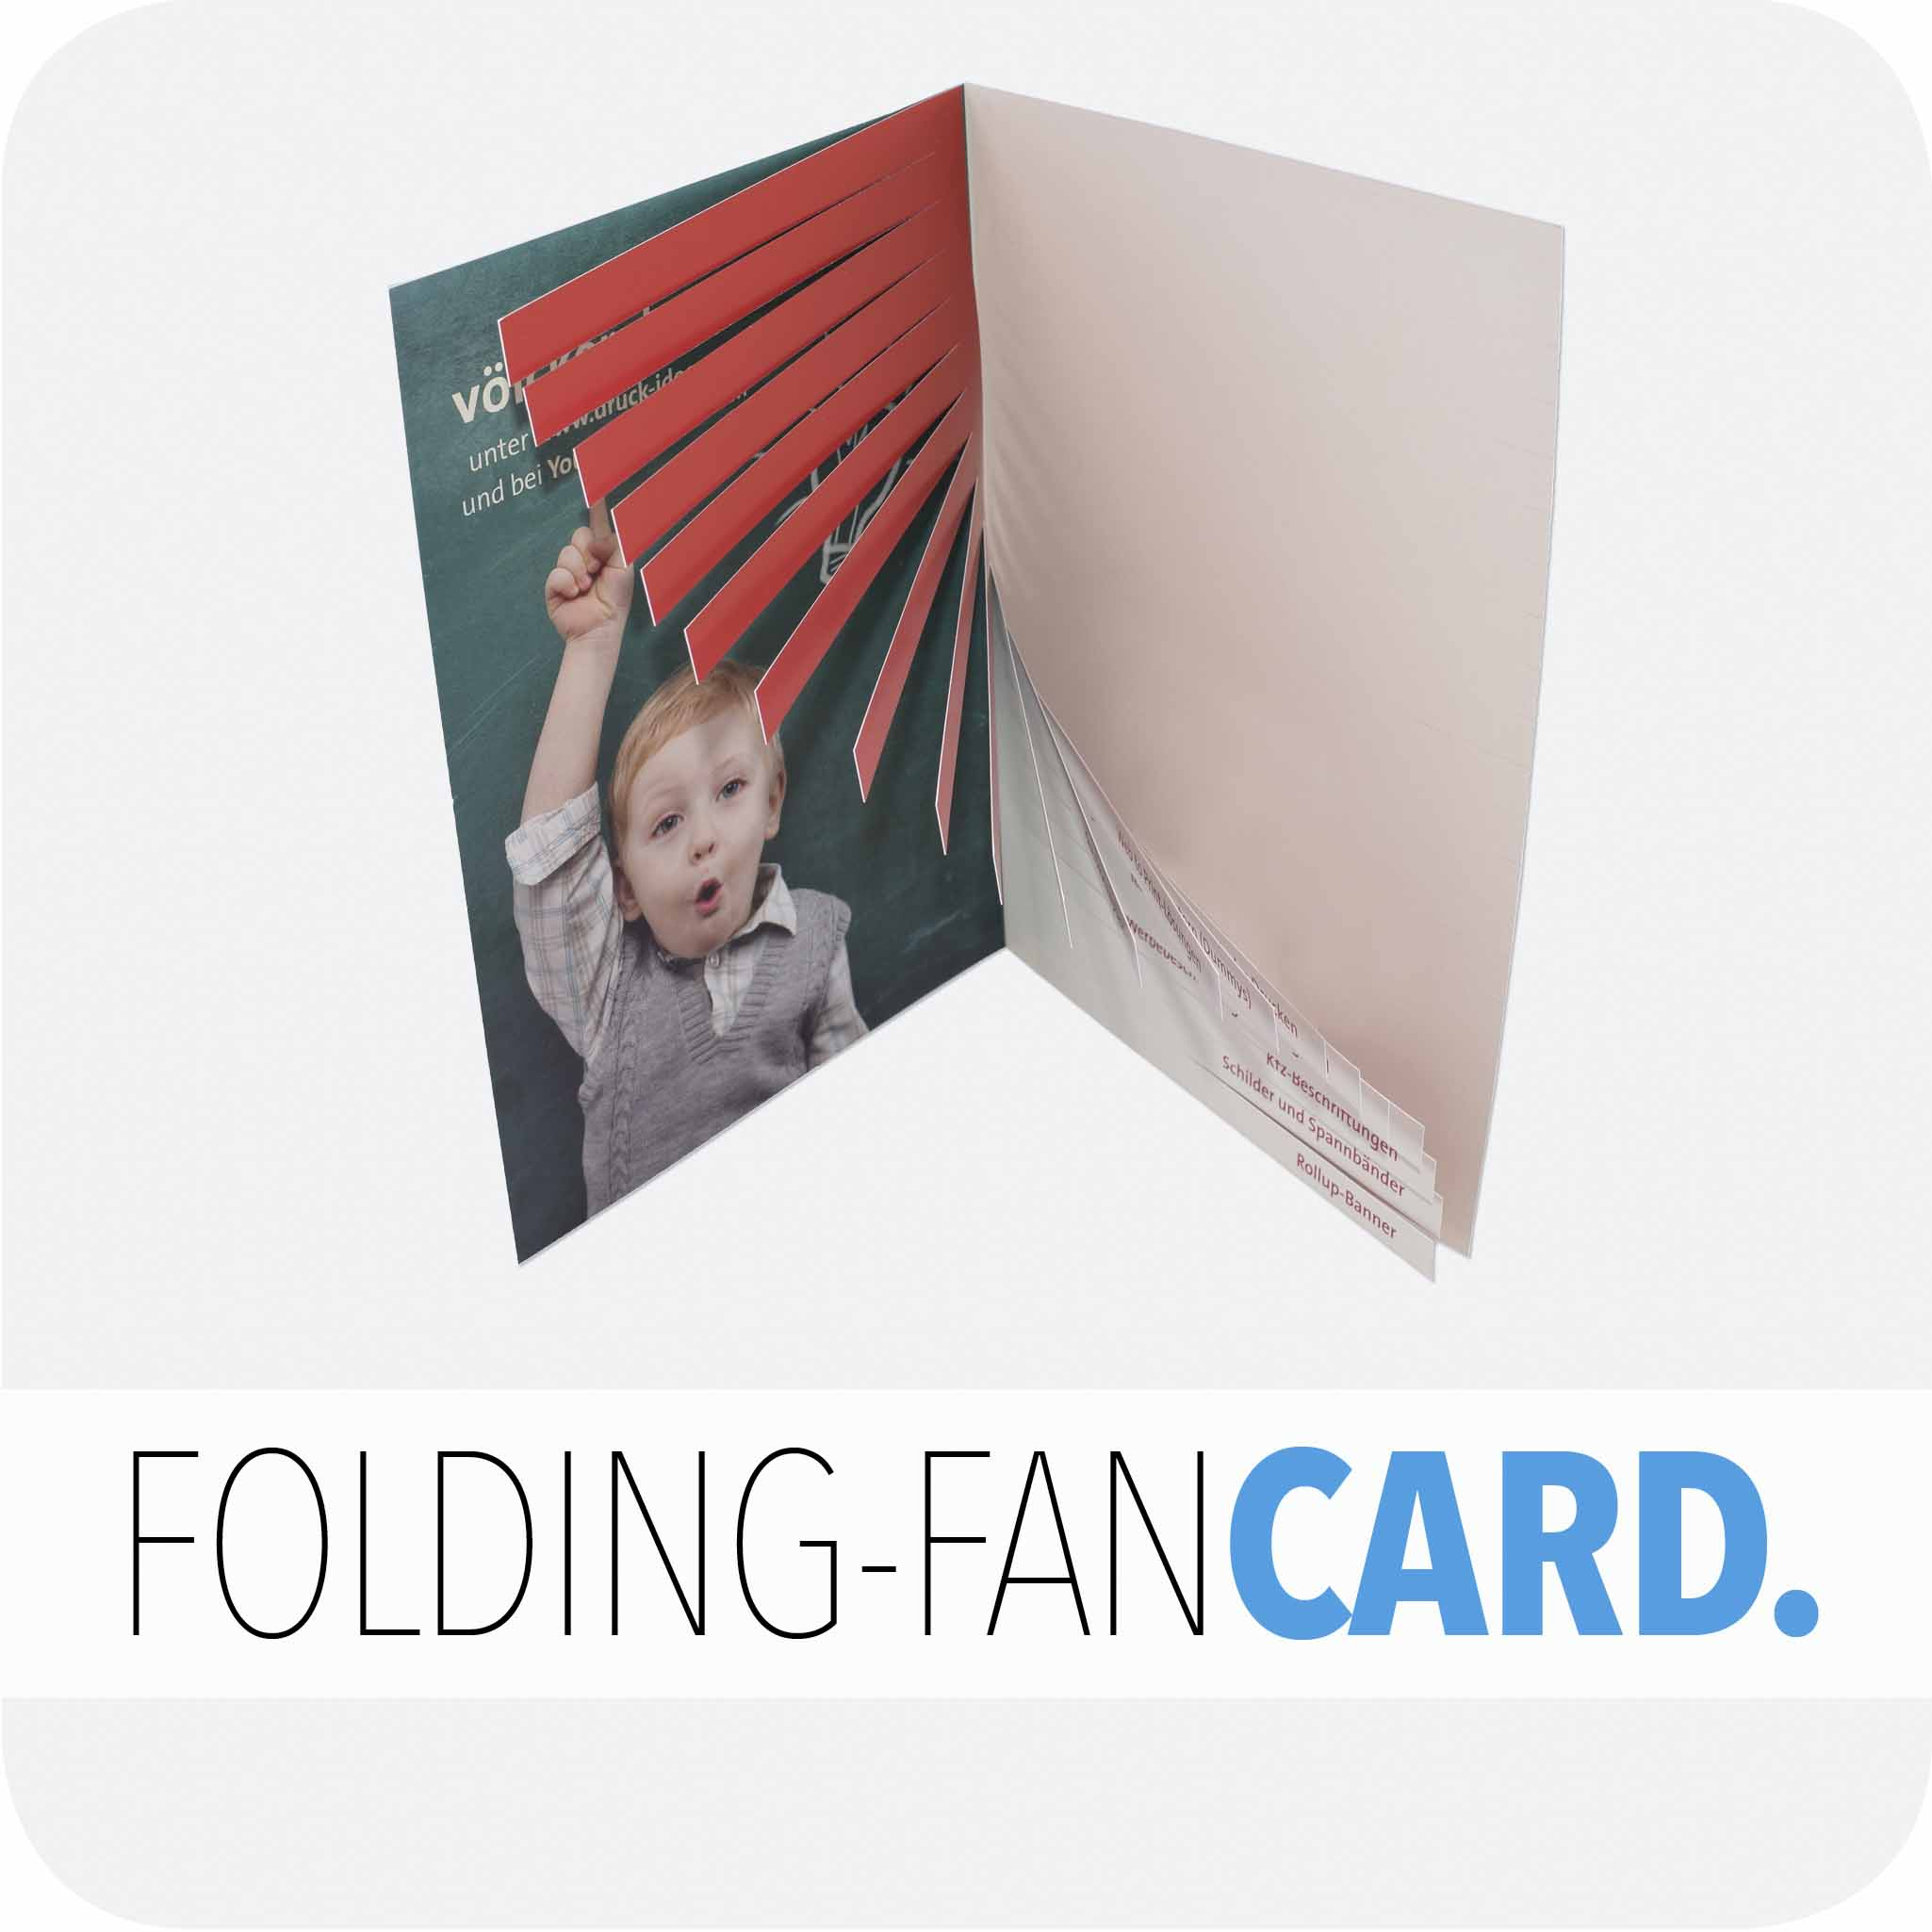 Folding-fan card